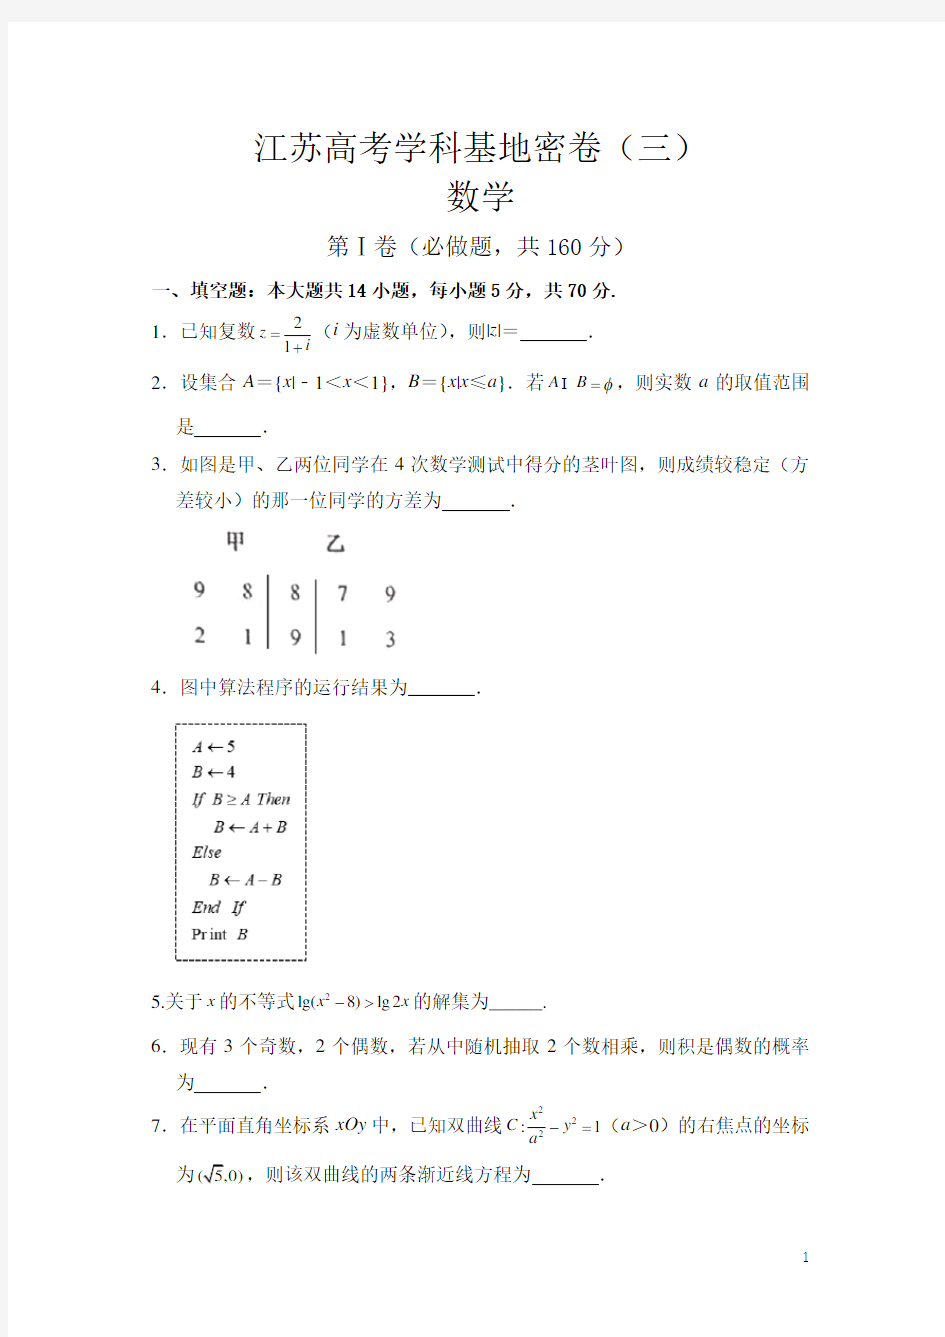 2020届江苏高考学科基地密卷(三)数学试题含附加题